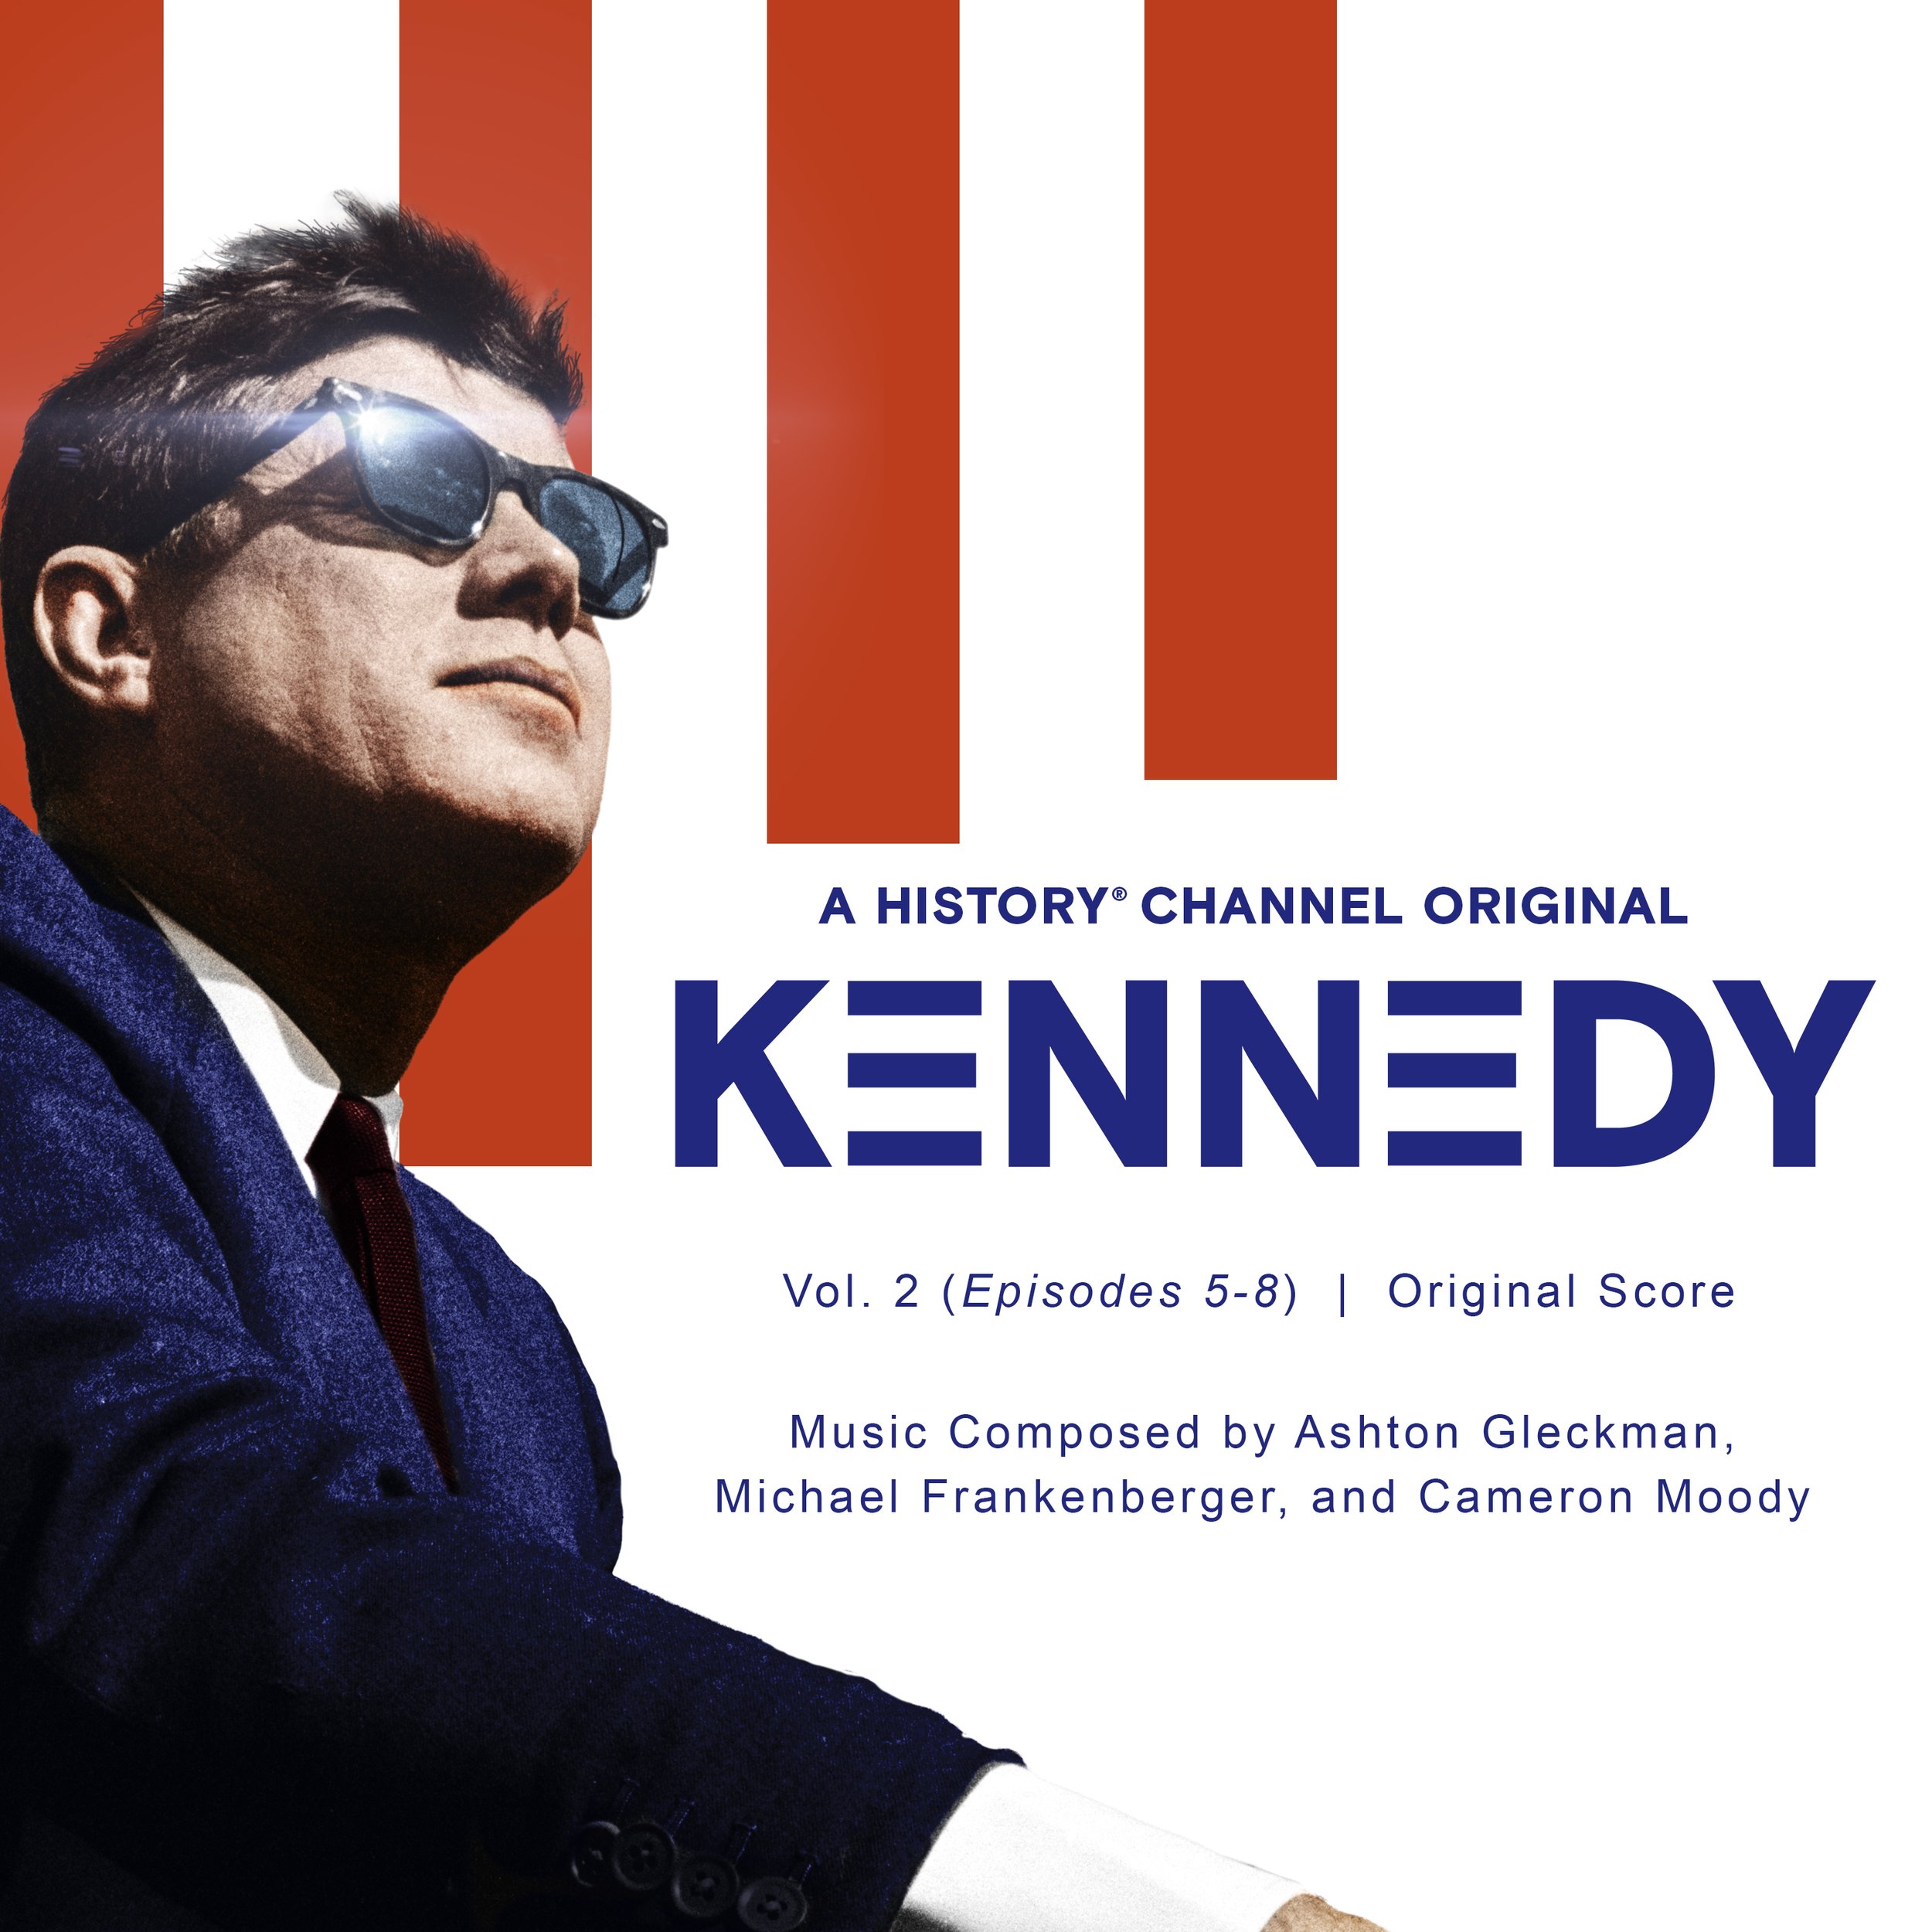 Kennedy, Vol 2 (Episodes 5-8)